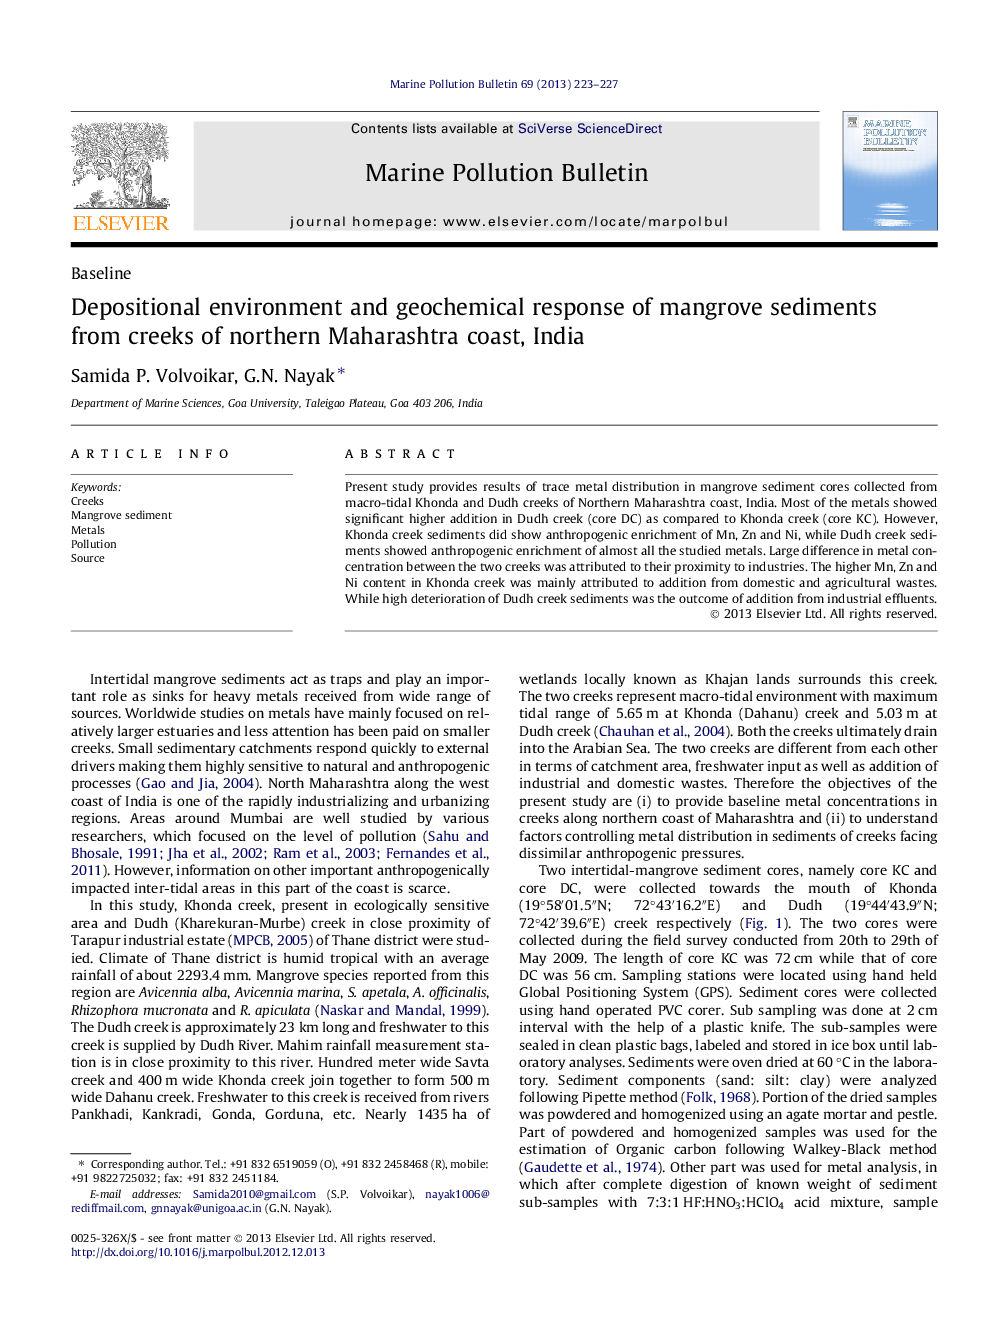 محیط زیست محیطی و پاسخ ژئوشیمیایی رسوبات مانگرو از سواحل شمال ساحل مهاراشترا، هند 